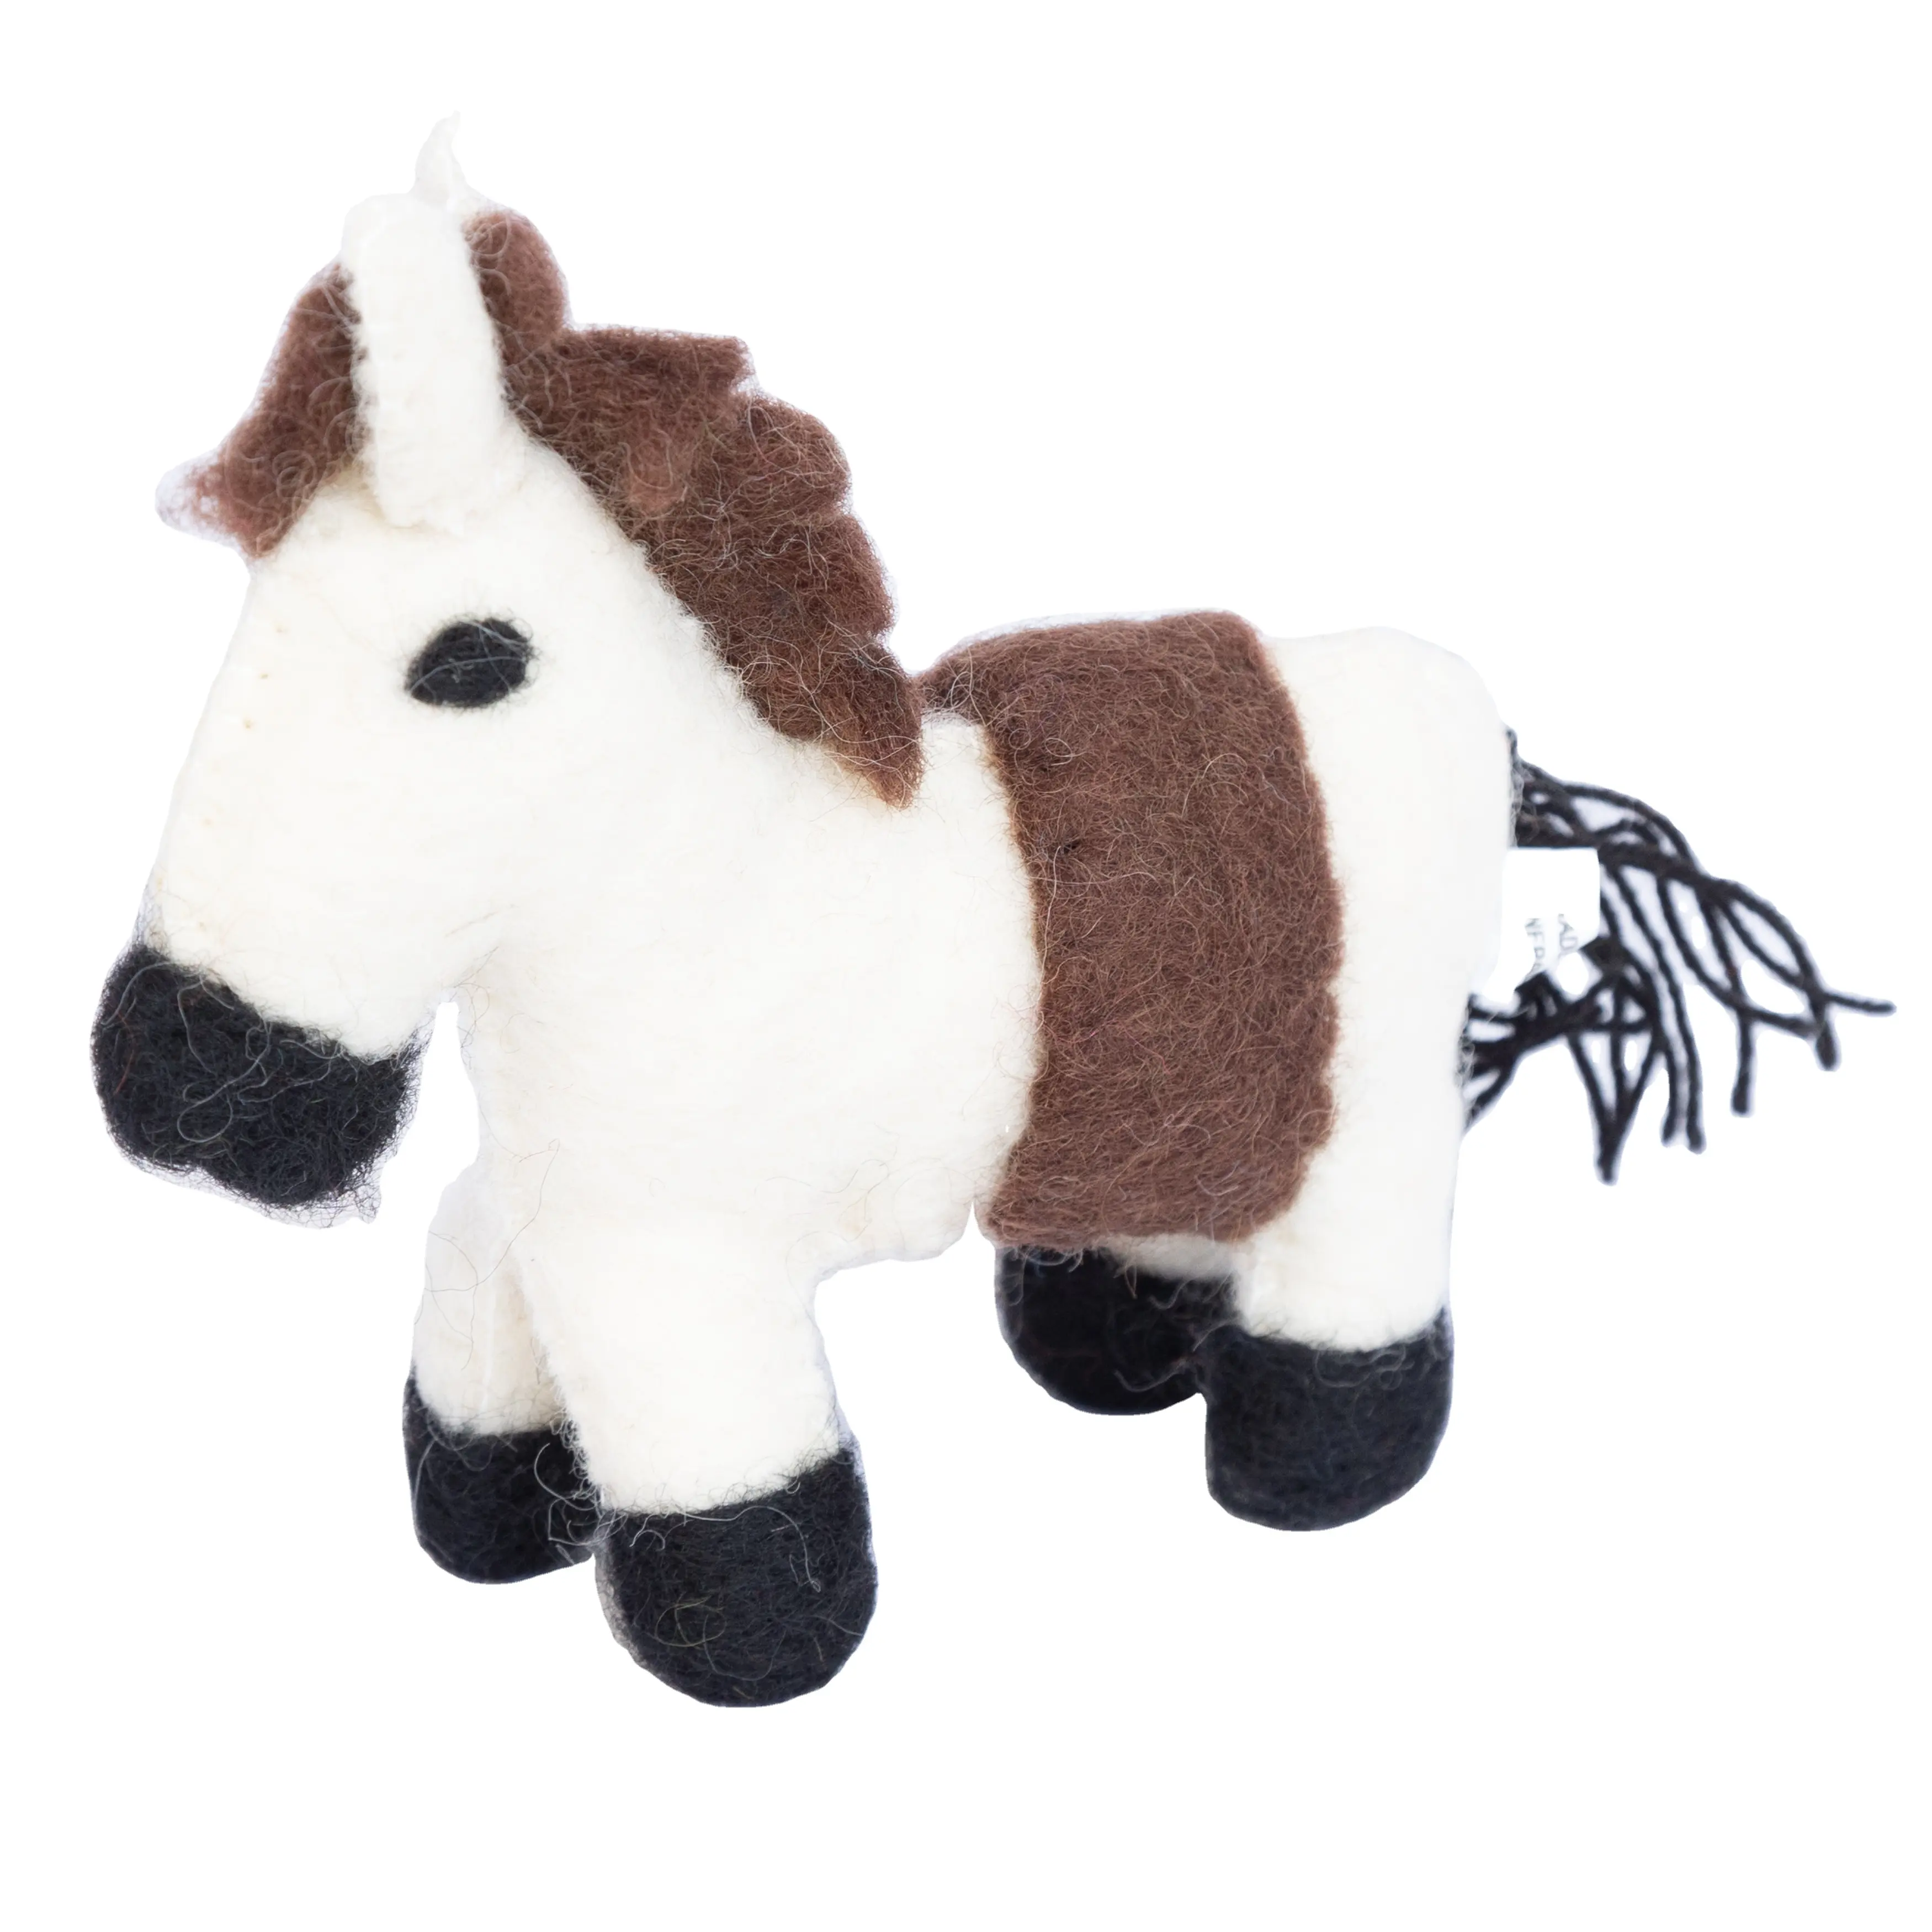 Juguetes de fieltro asequibles para niños: conjunto de diseño de elefante y caballo, accesorios creativos de juguete de fieltro: Animales de lana personalizados para jugar